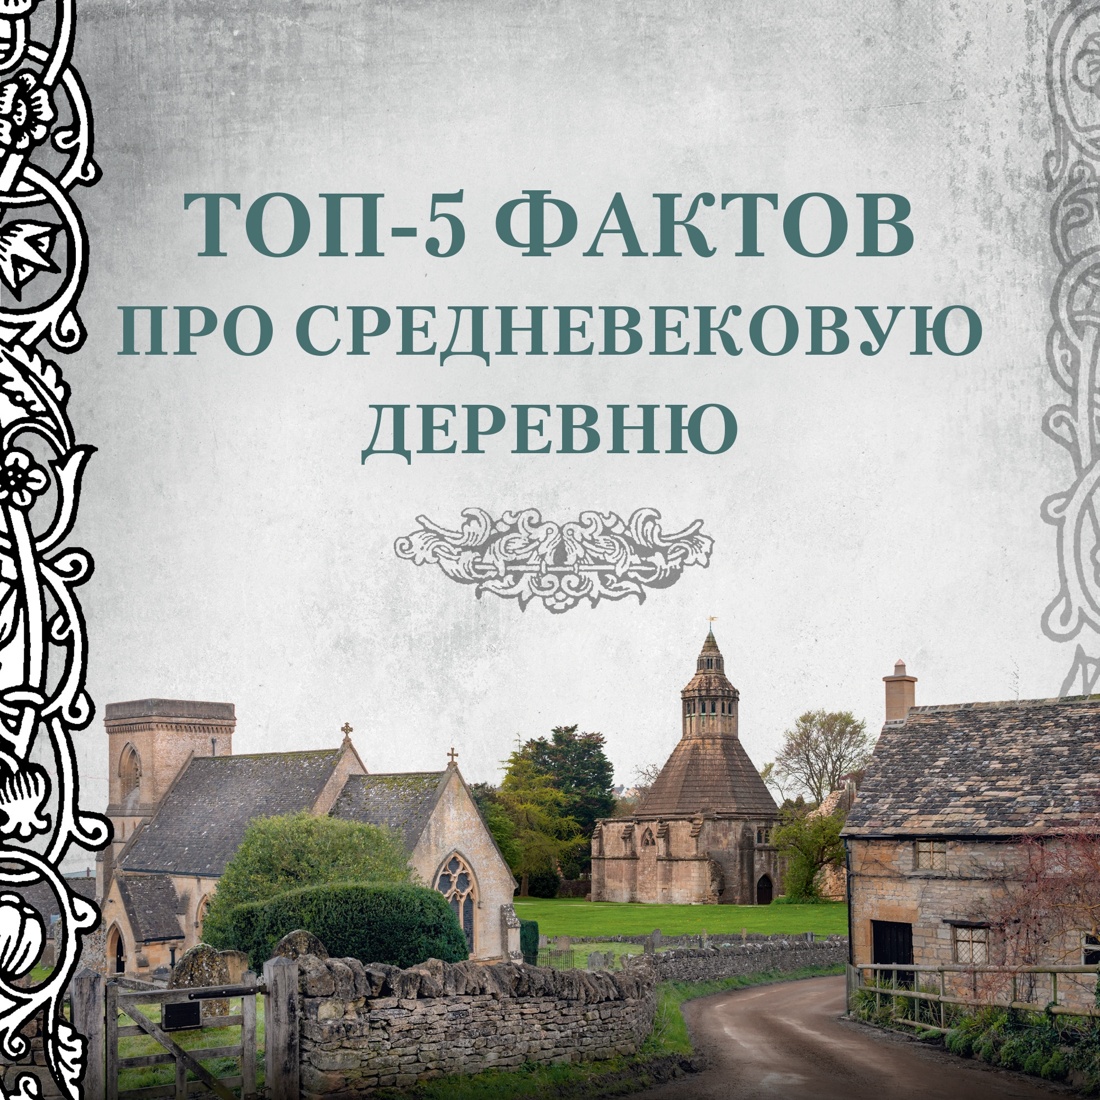 Промо материал к книге "Жизнь в средневековой деревне" №0